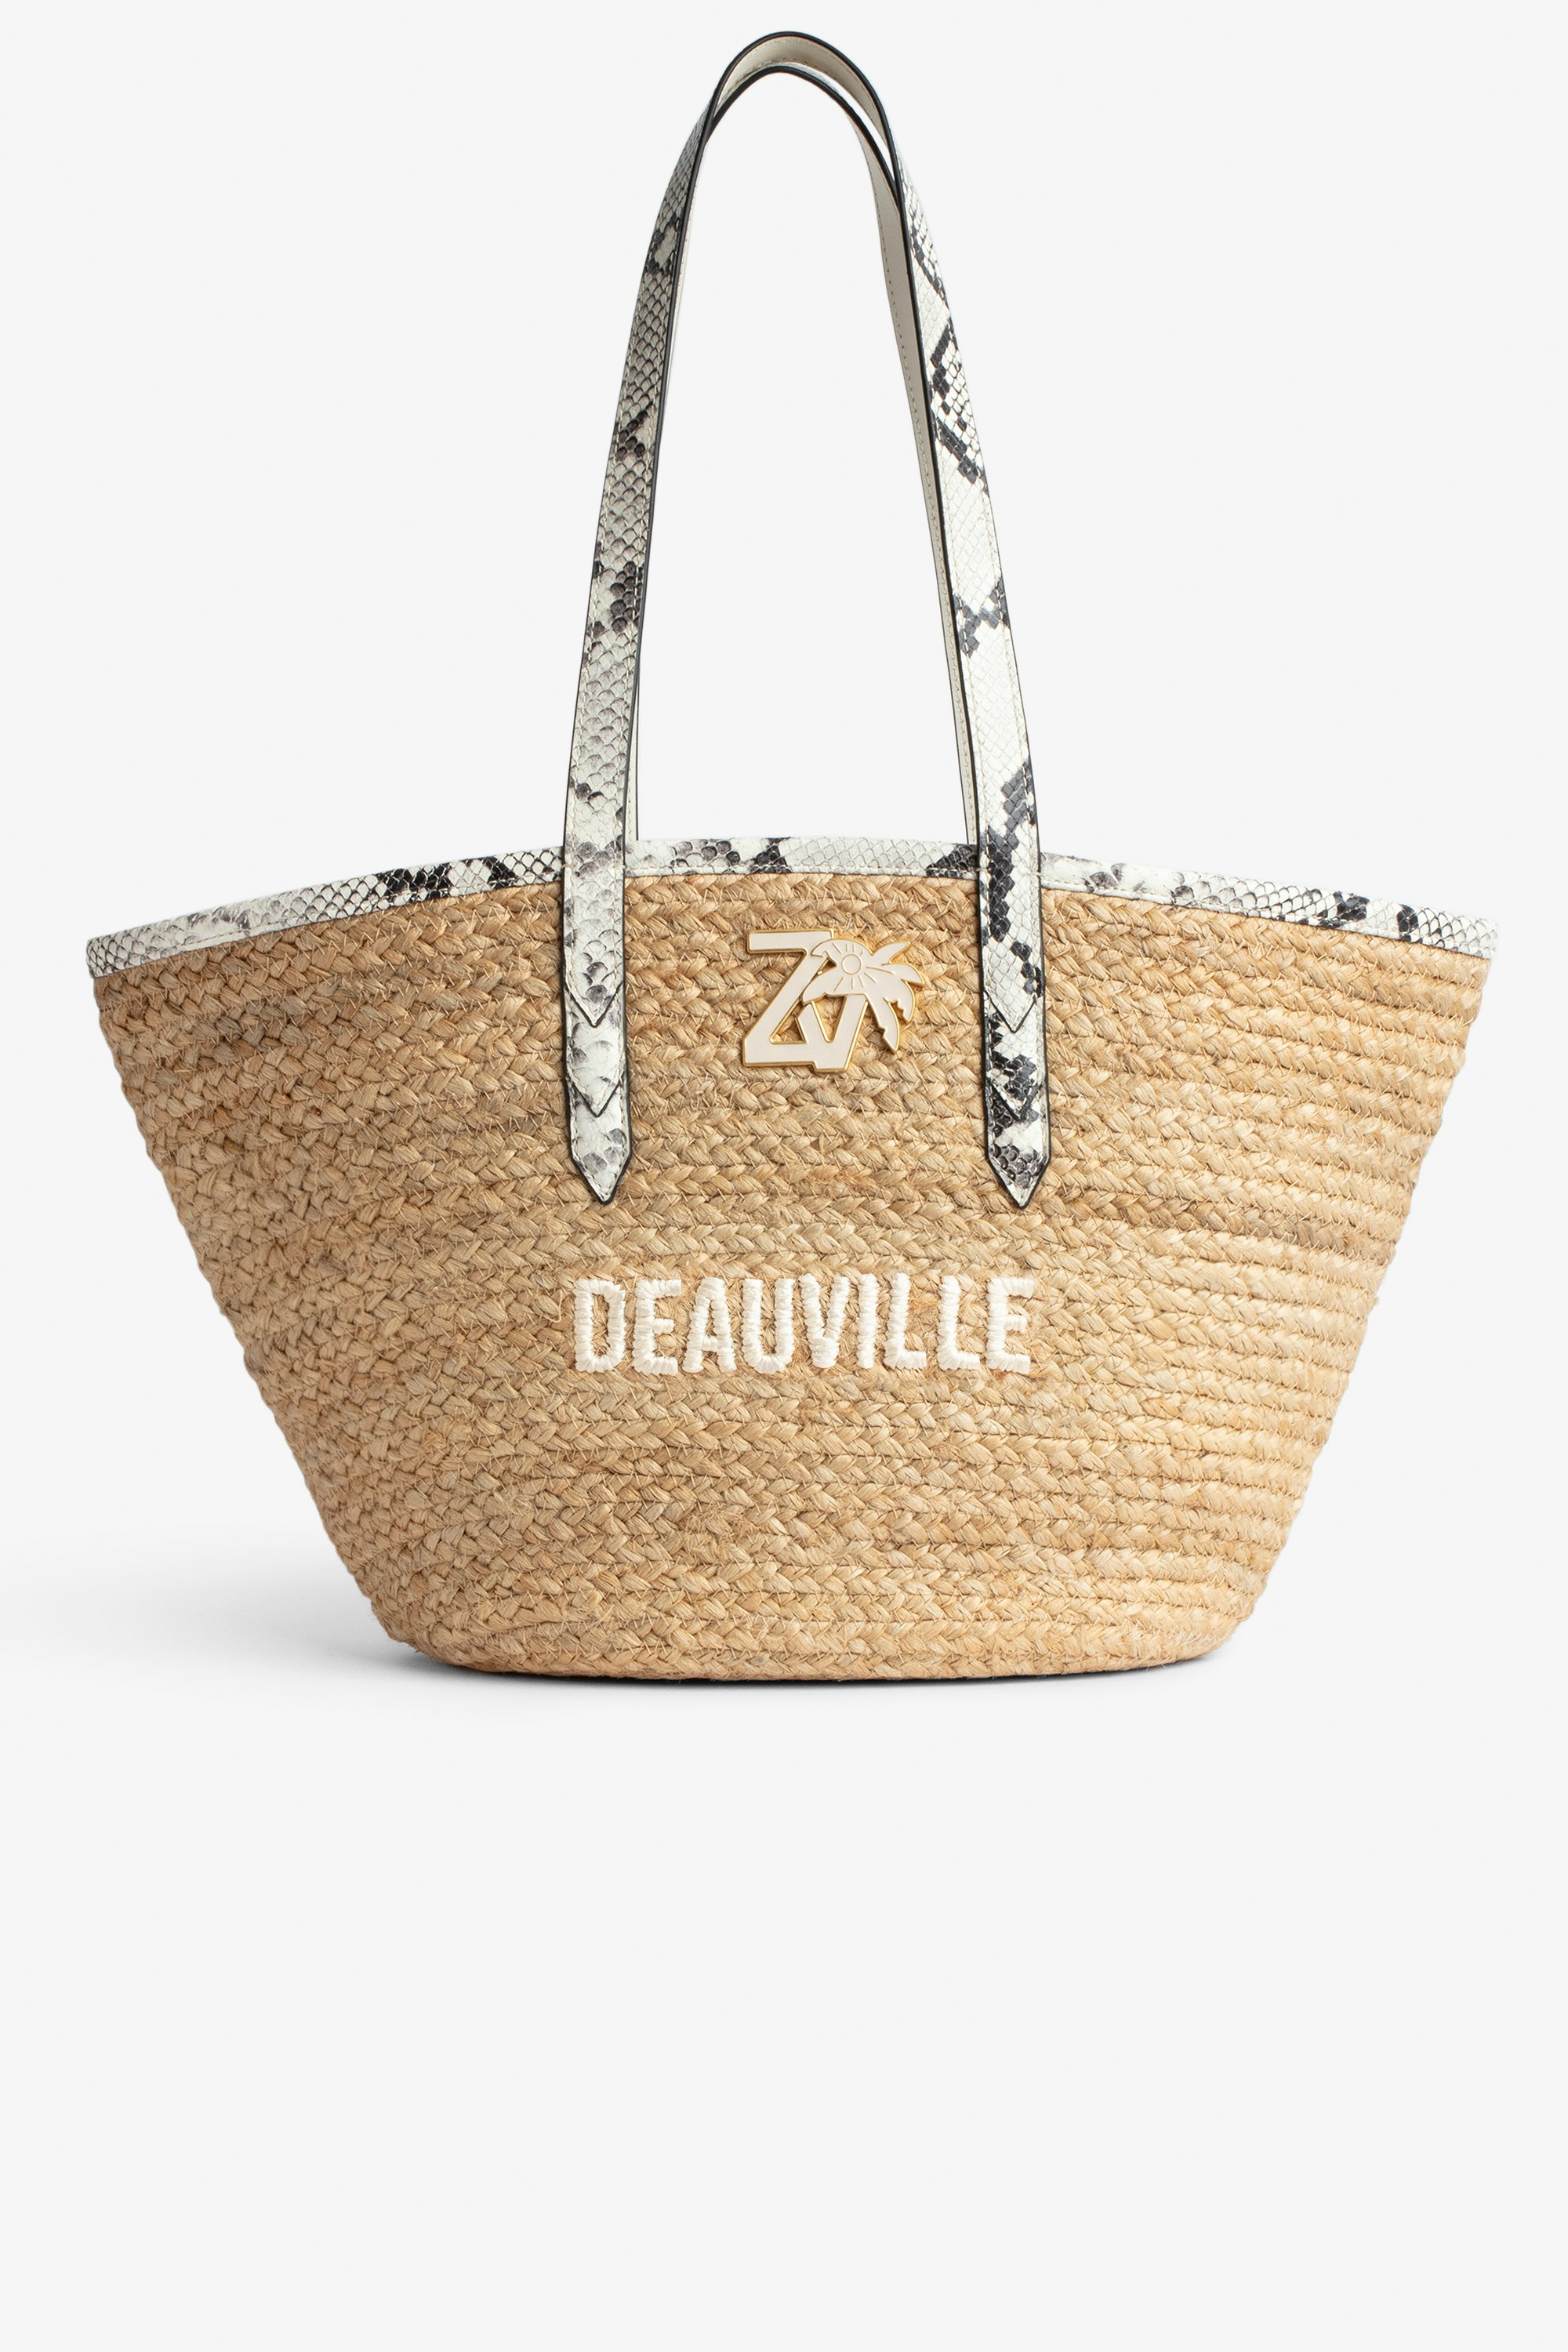 Tasche Le Beach Bag Damen-Strohtasche mit Henkeln aus ecrufarbenem Leder in Python-Optik, „Deauville“-Stickerei und ZV-Charm